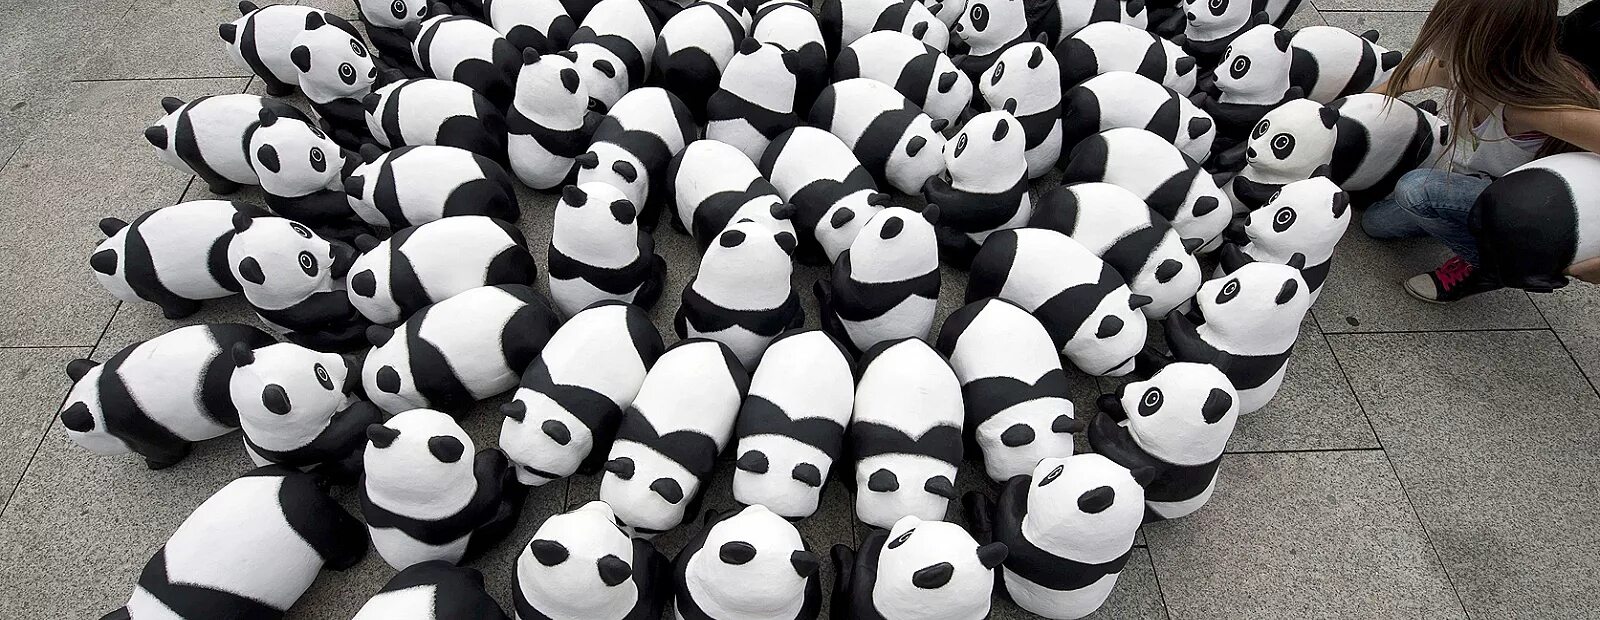 Панда собирает в круг. Всемирный день панды. Панда на земле. Толпа панд. Численность панд в мире.